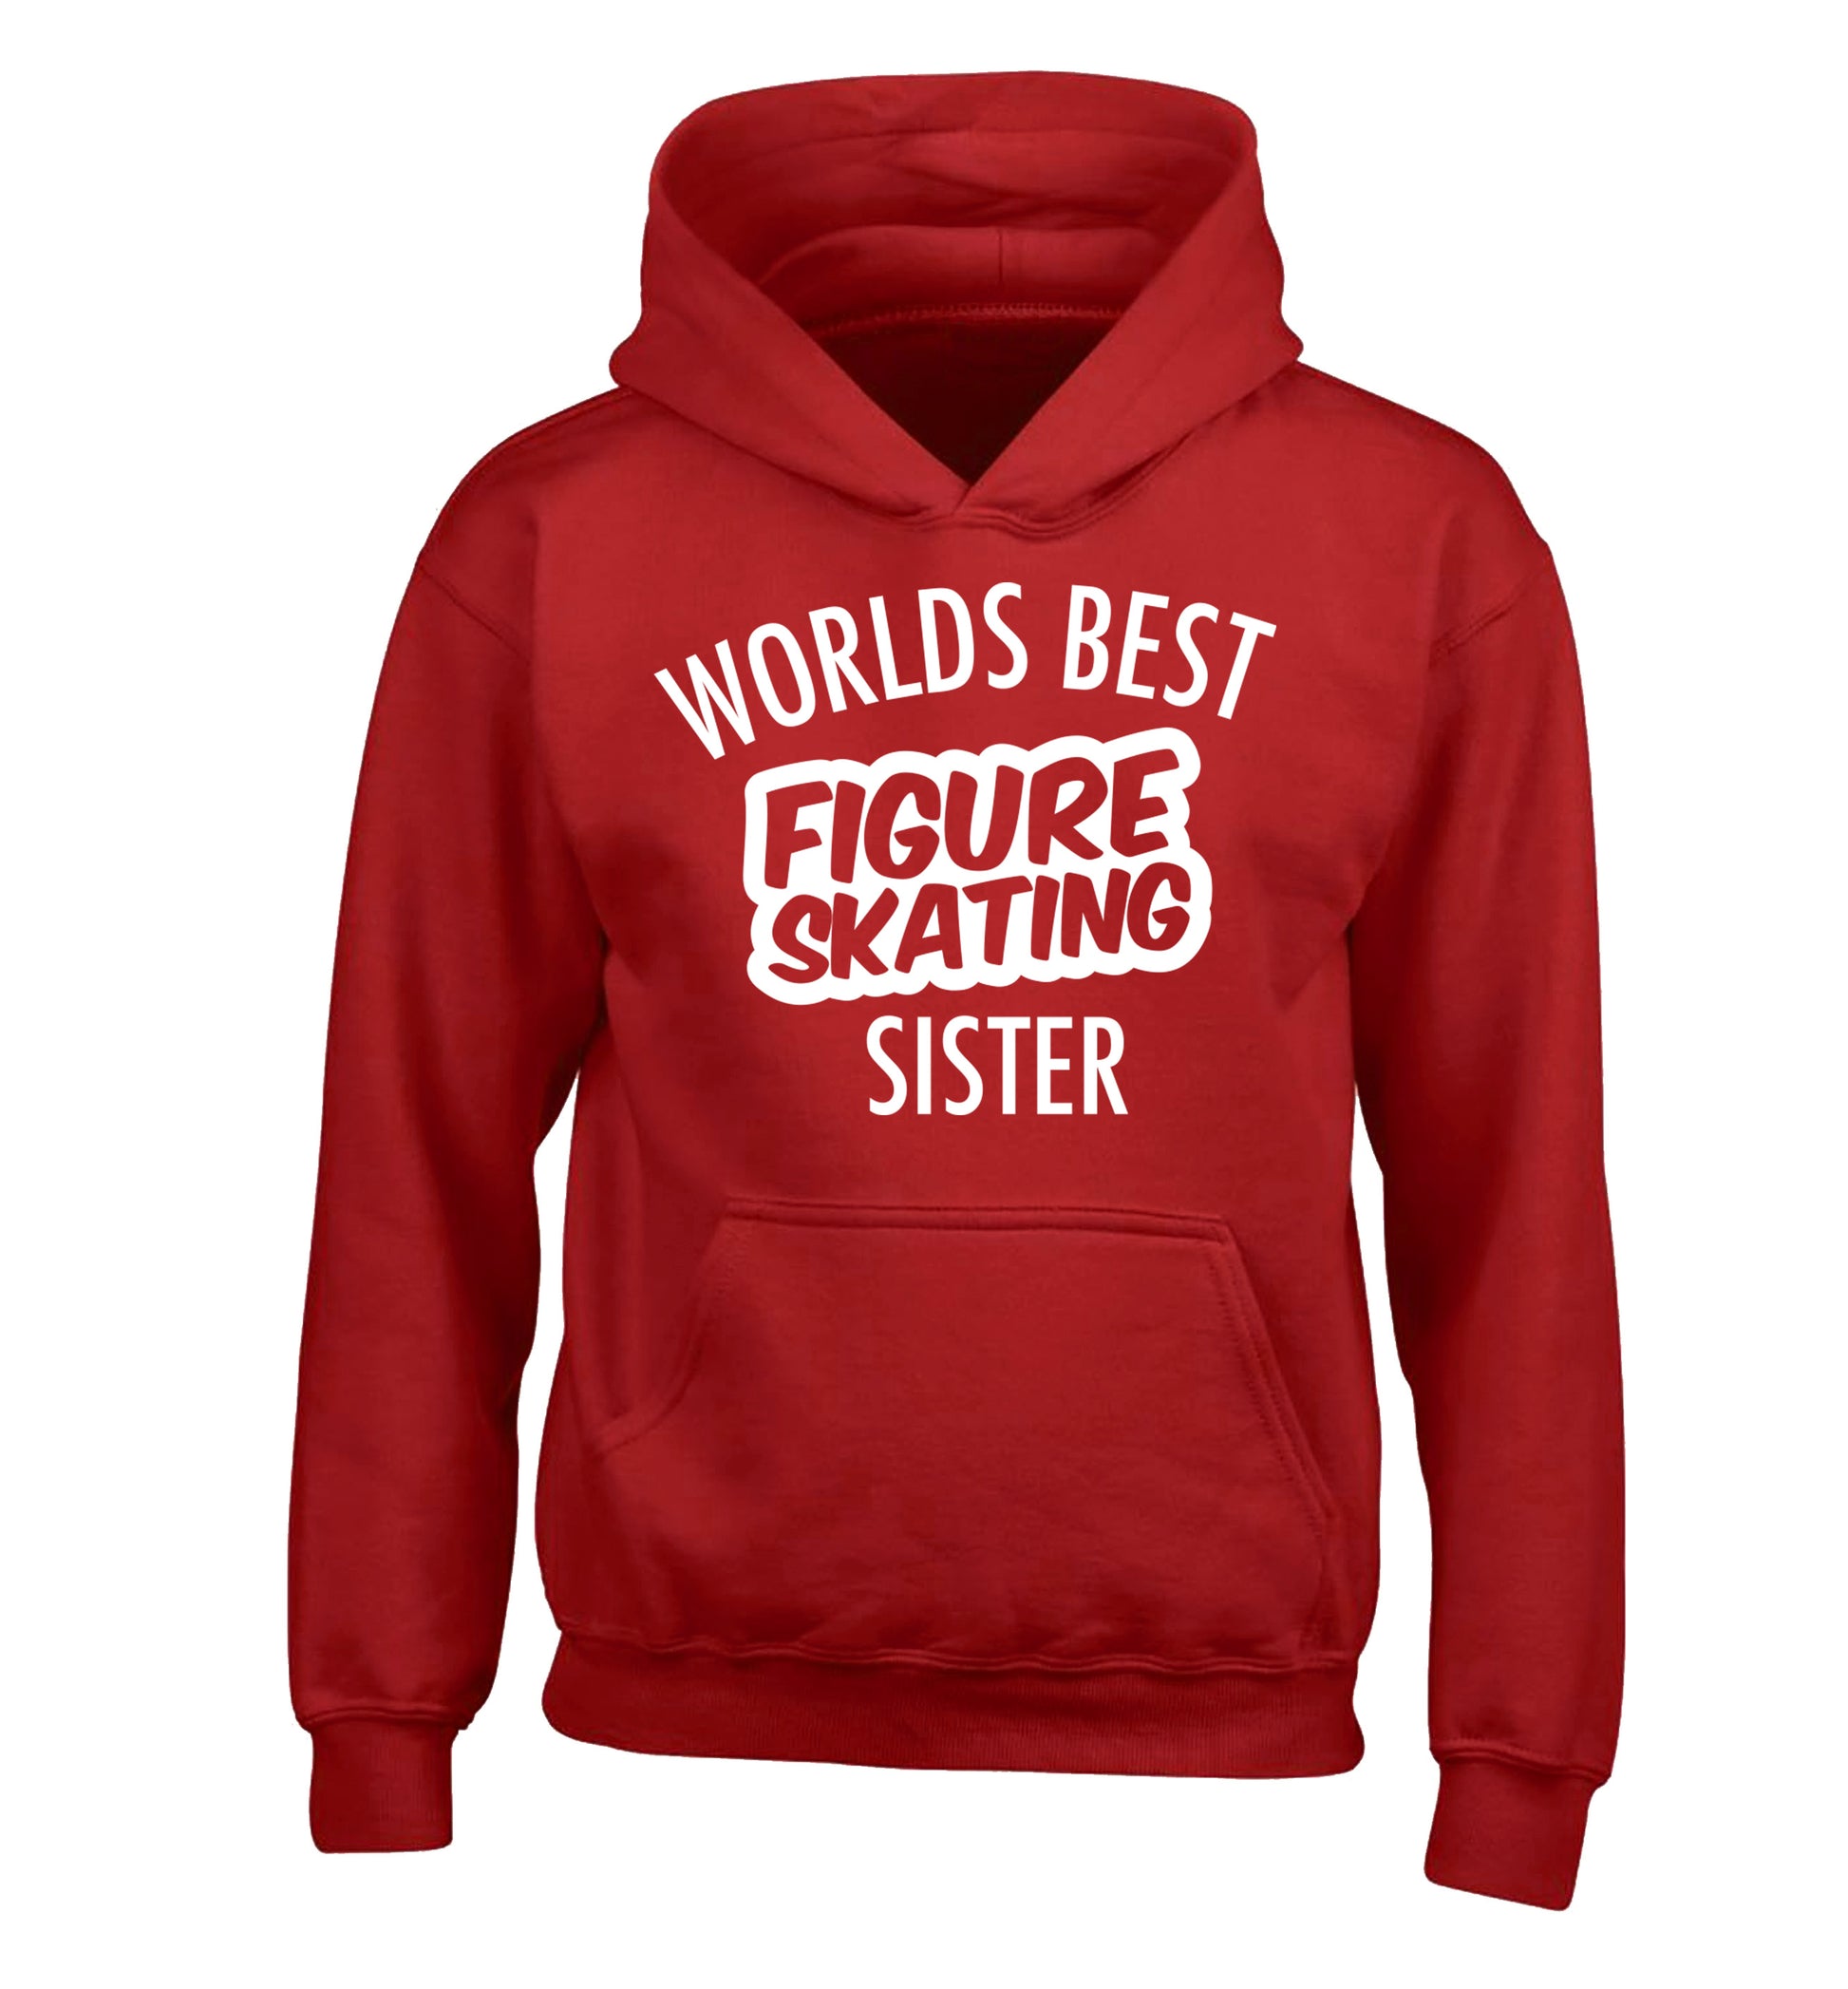 Worlds best figure skating sisterchildren's red hoodie 12-14 Years